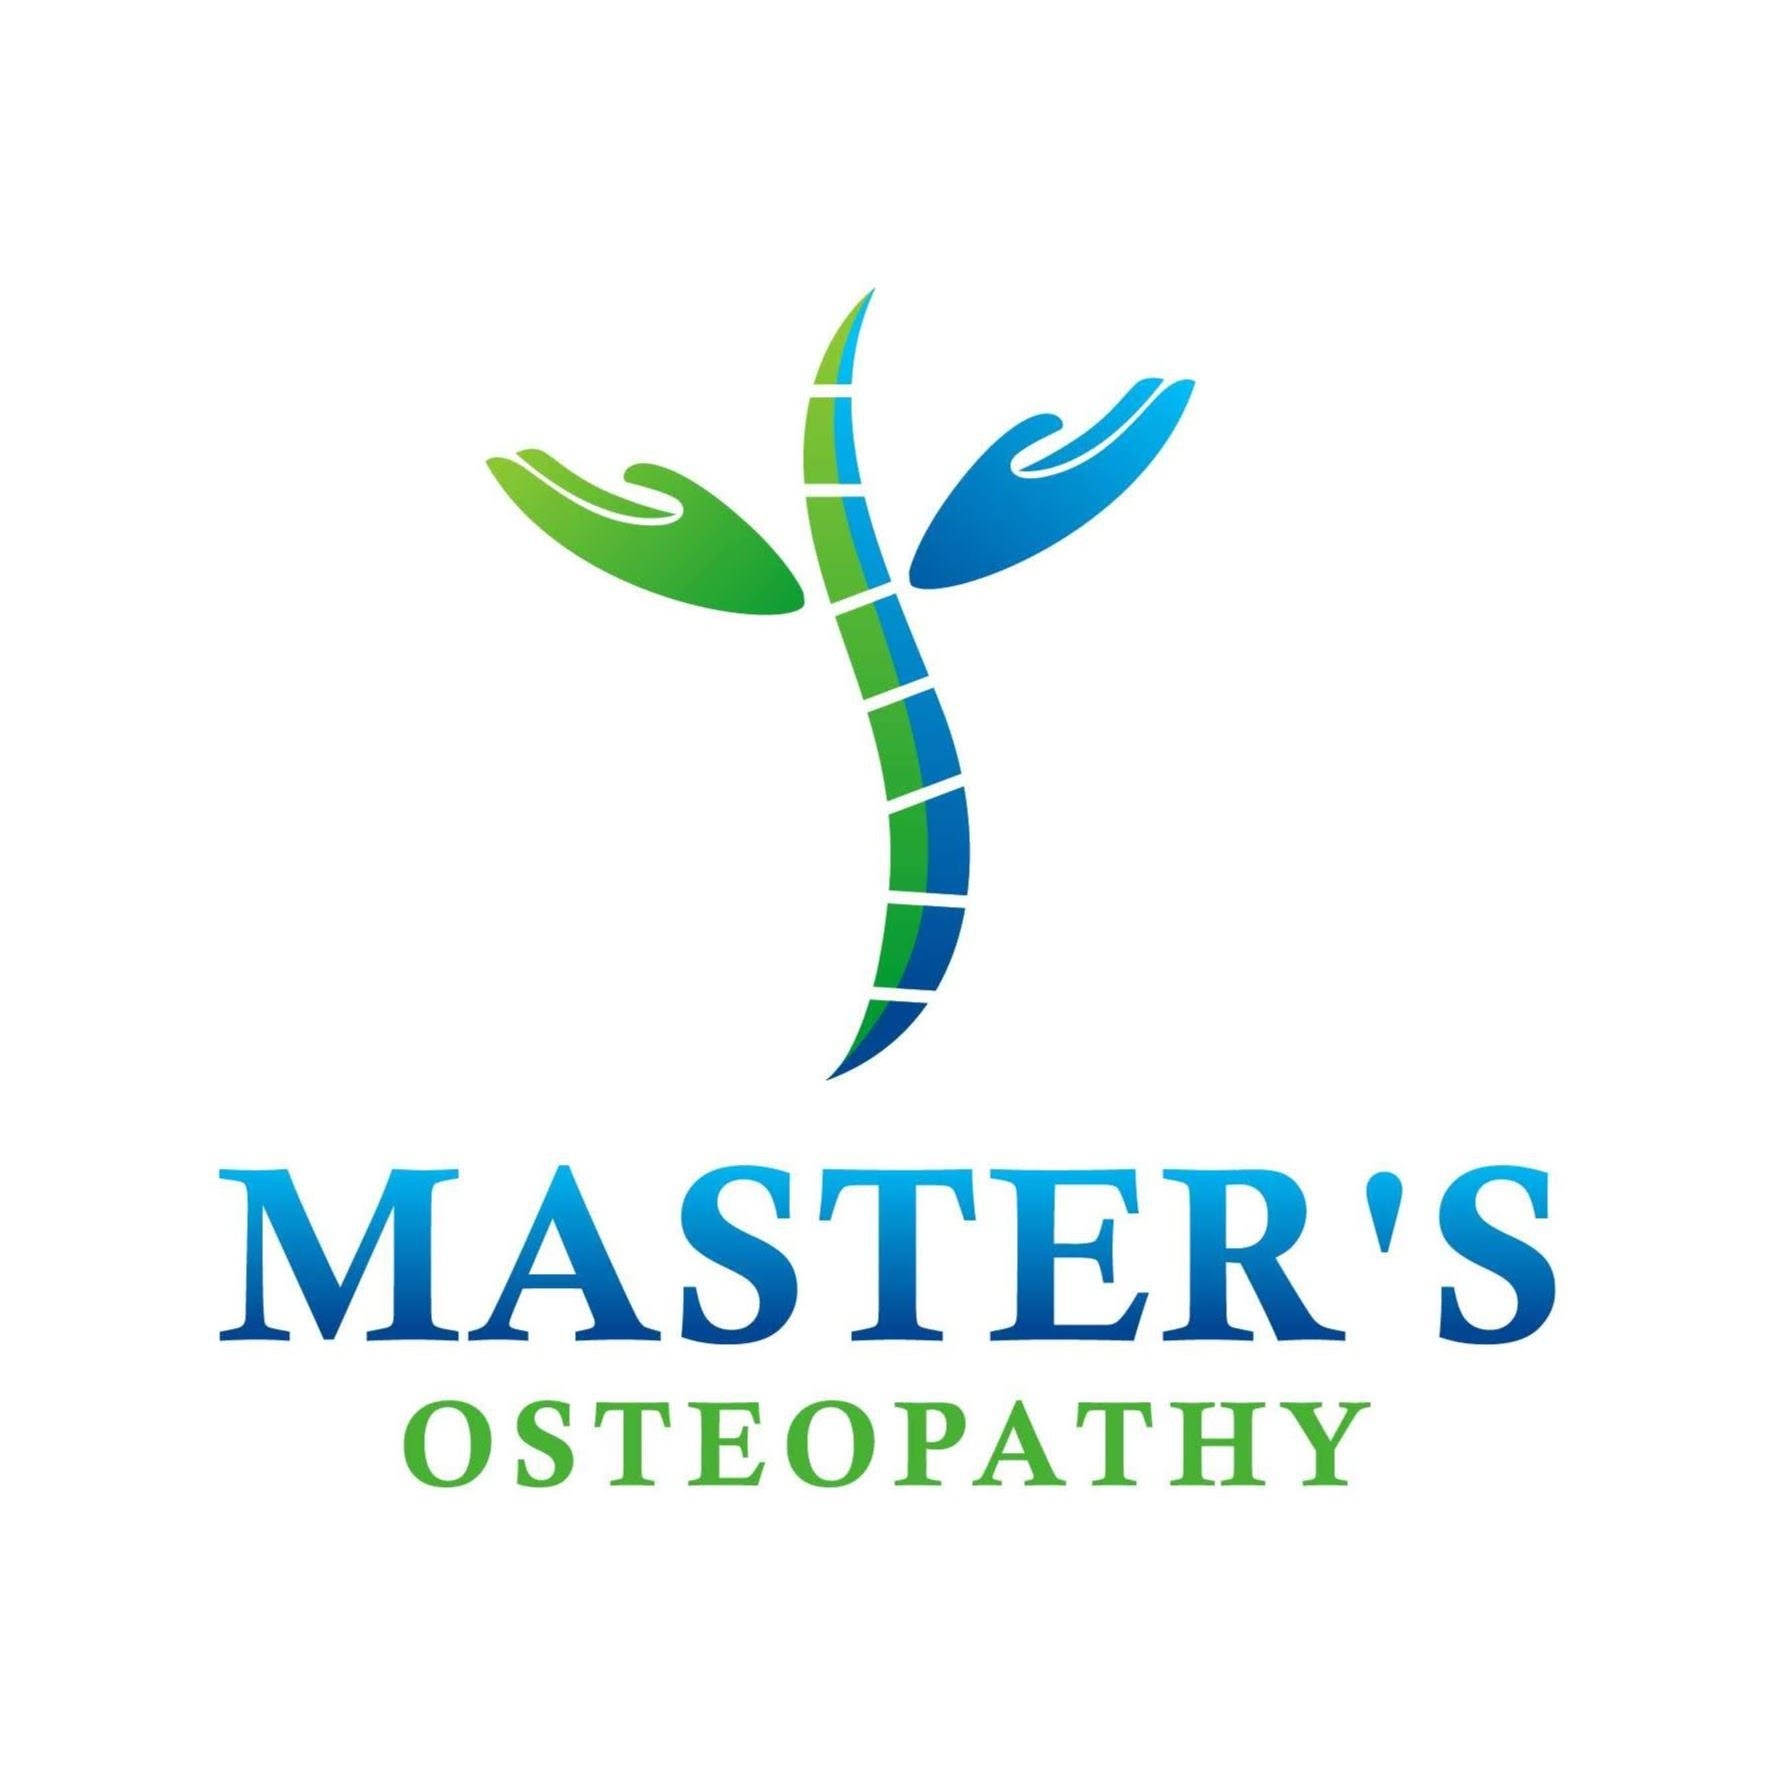 Master’s Osteopathy & Massage - Osteopathy